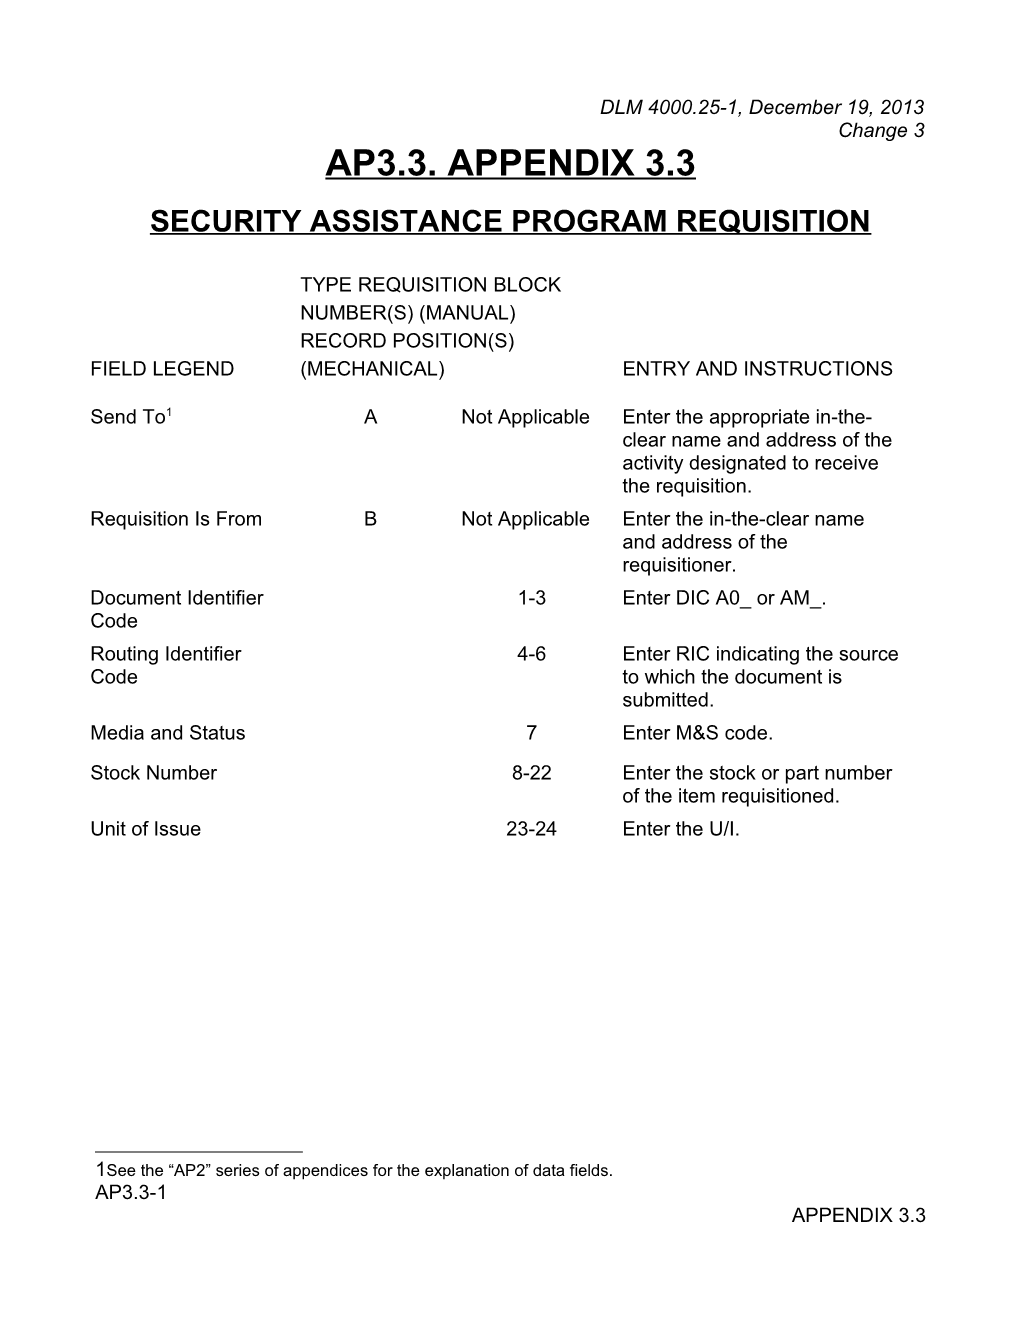 Appendix 3.3 - Security Assistance Program Requisition